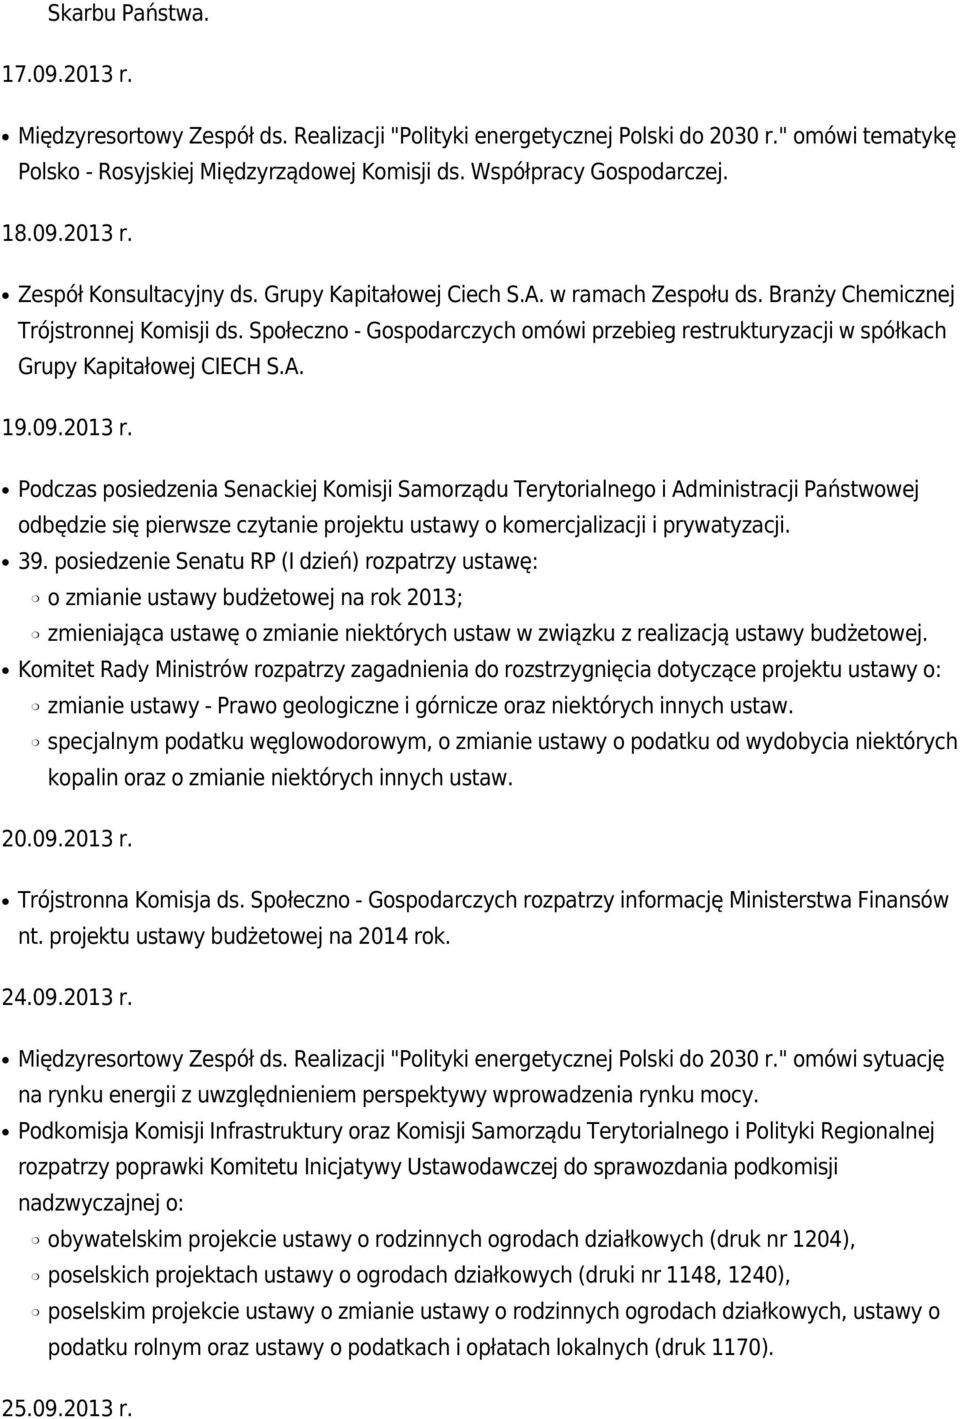 Społeczno - Gospodarczych omówi przebieg restrukturyzacji w spółkach Grupy Kapitałowej CIECH S.A. 19.09.2013 r.